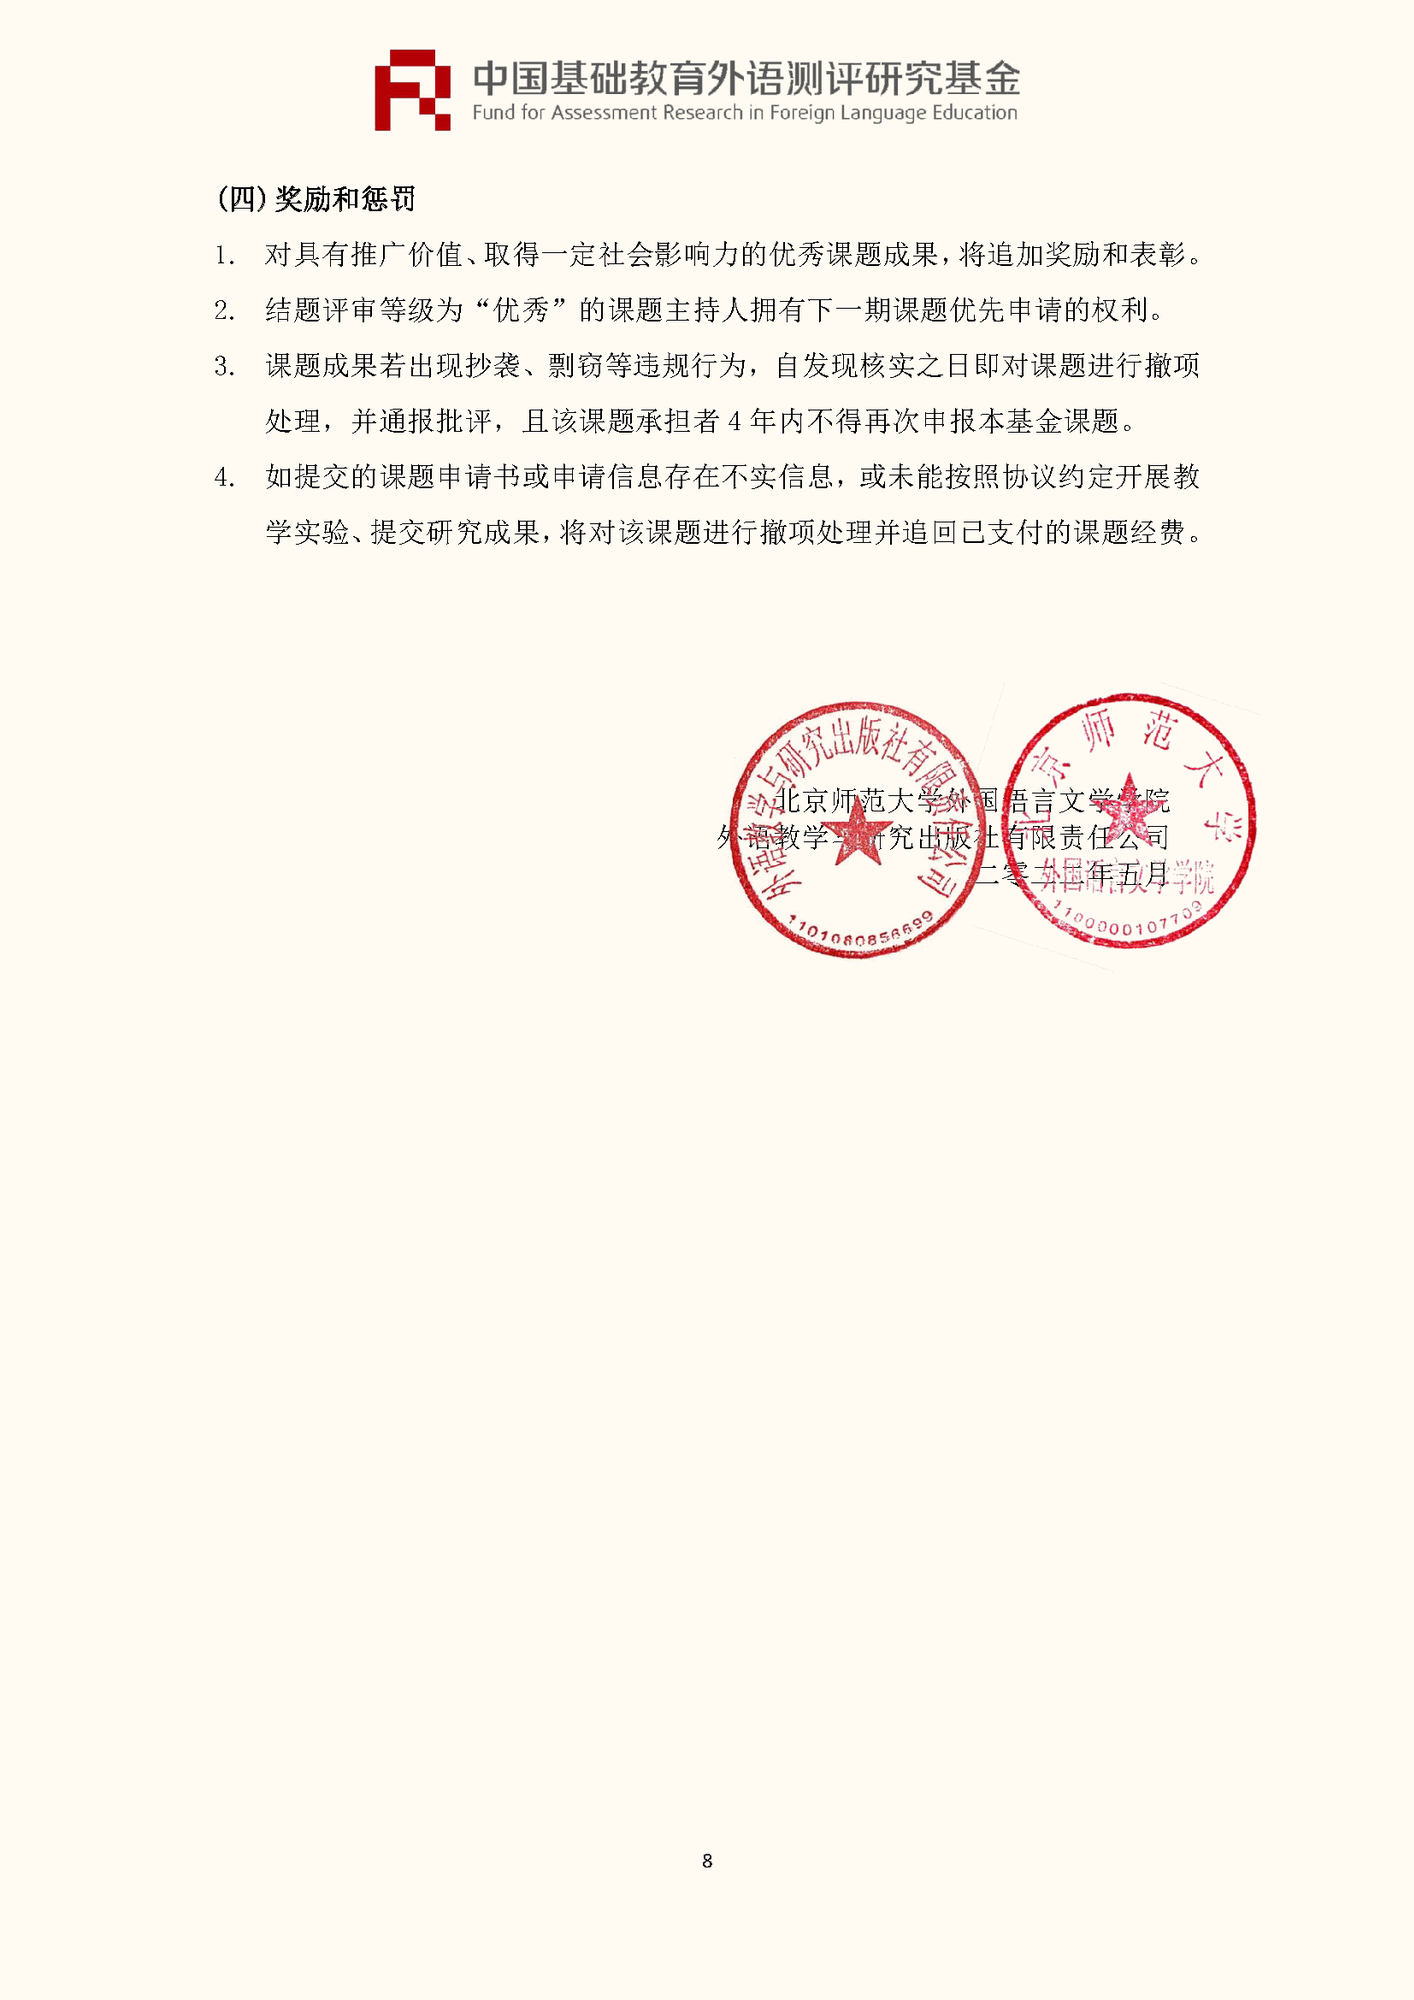 0520-”中国基础教育外语测评研究基金“项目第四期课题申报指南_页面_10